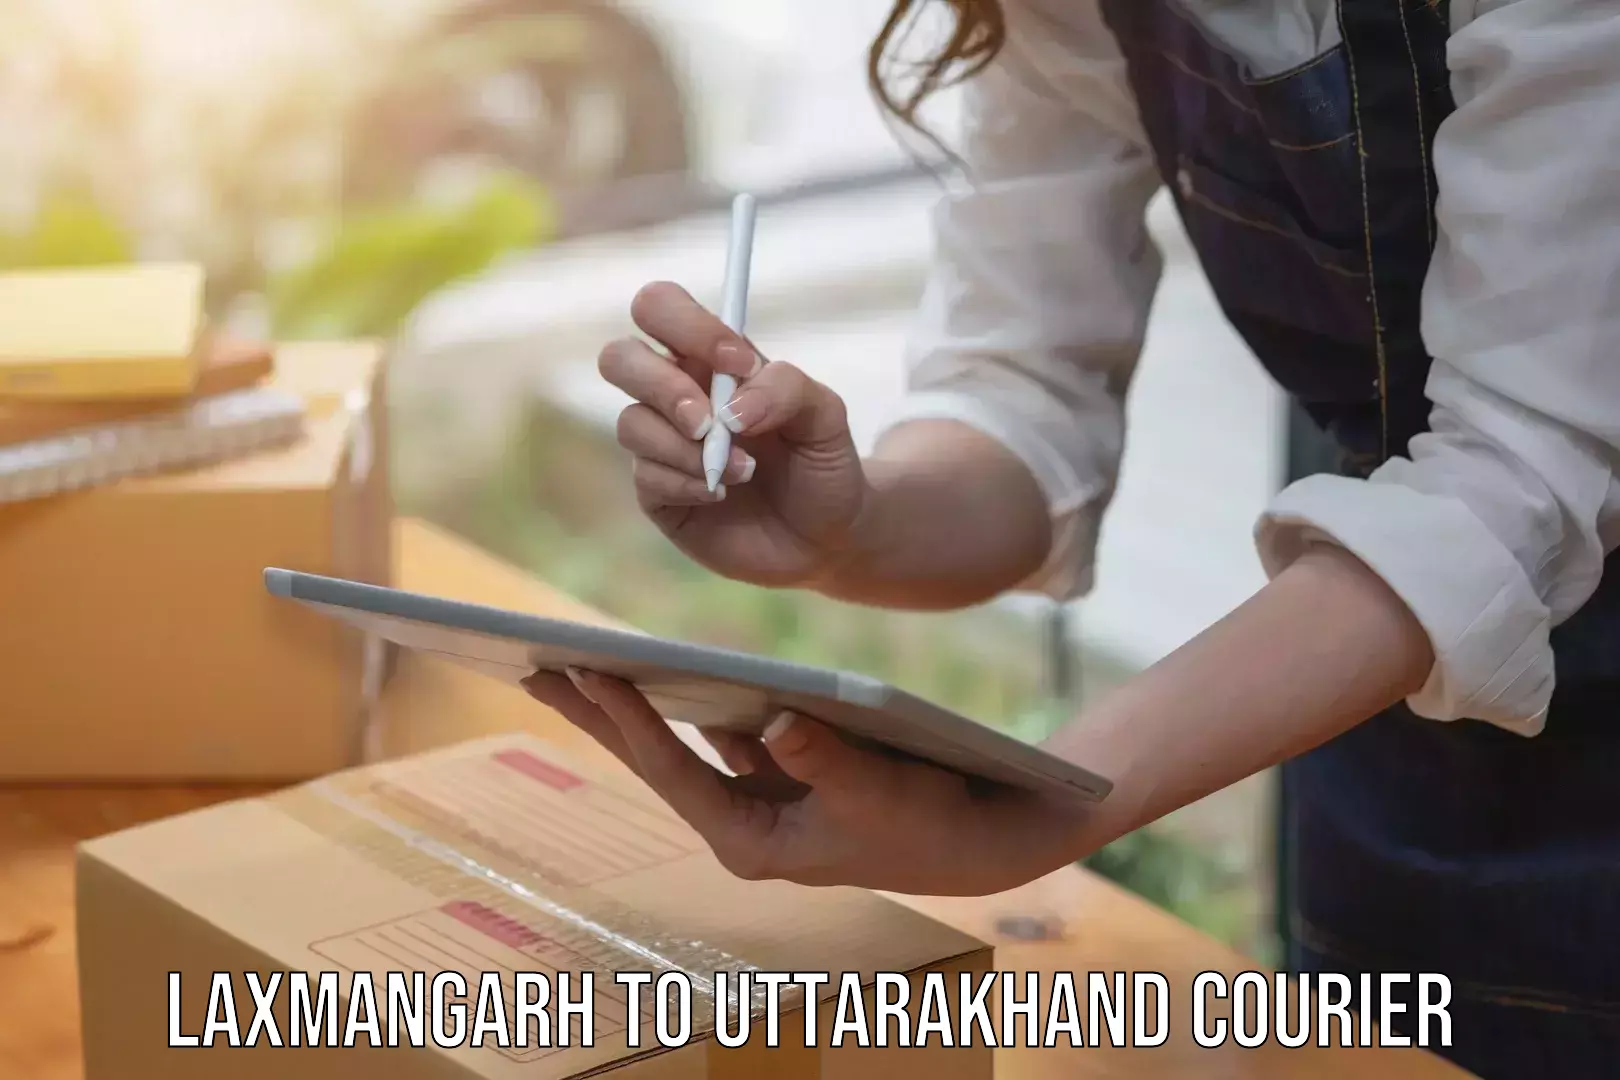 Courier service partnerships Laxmangarh to Uttarakhand